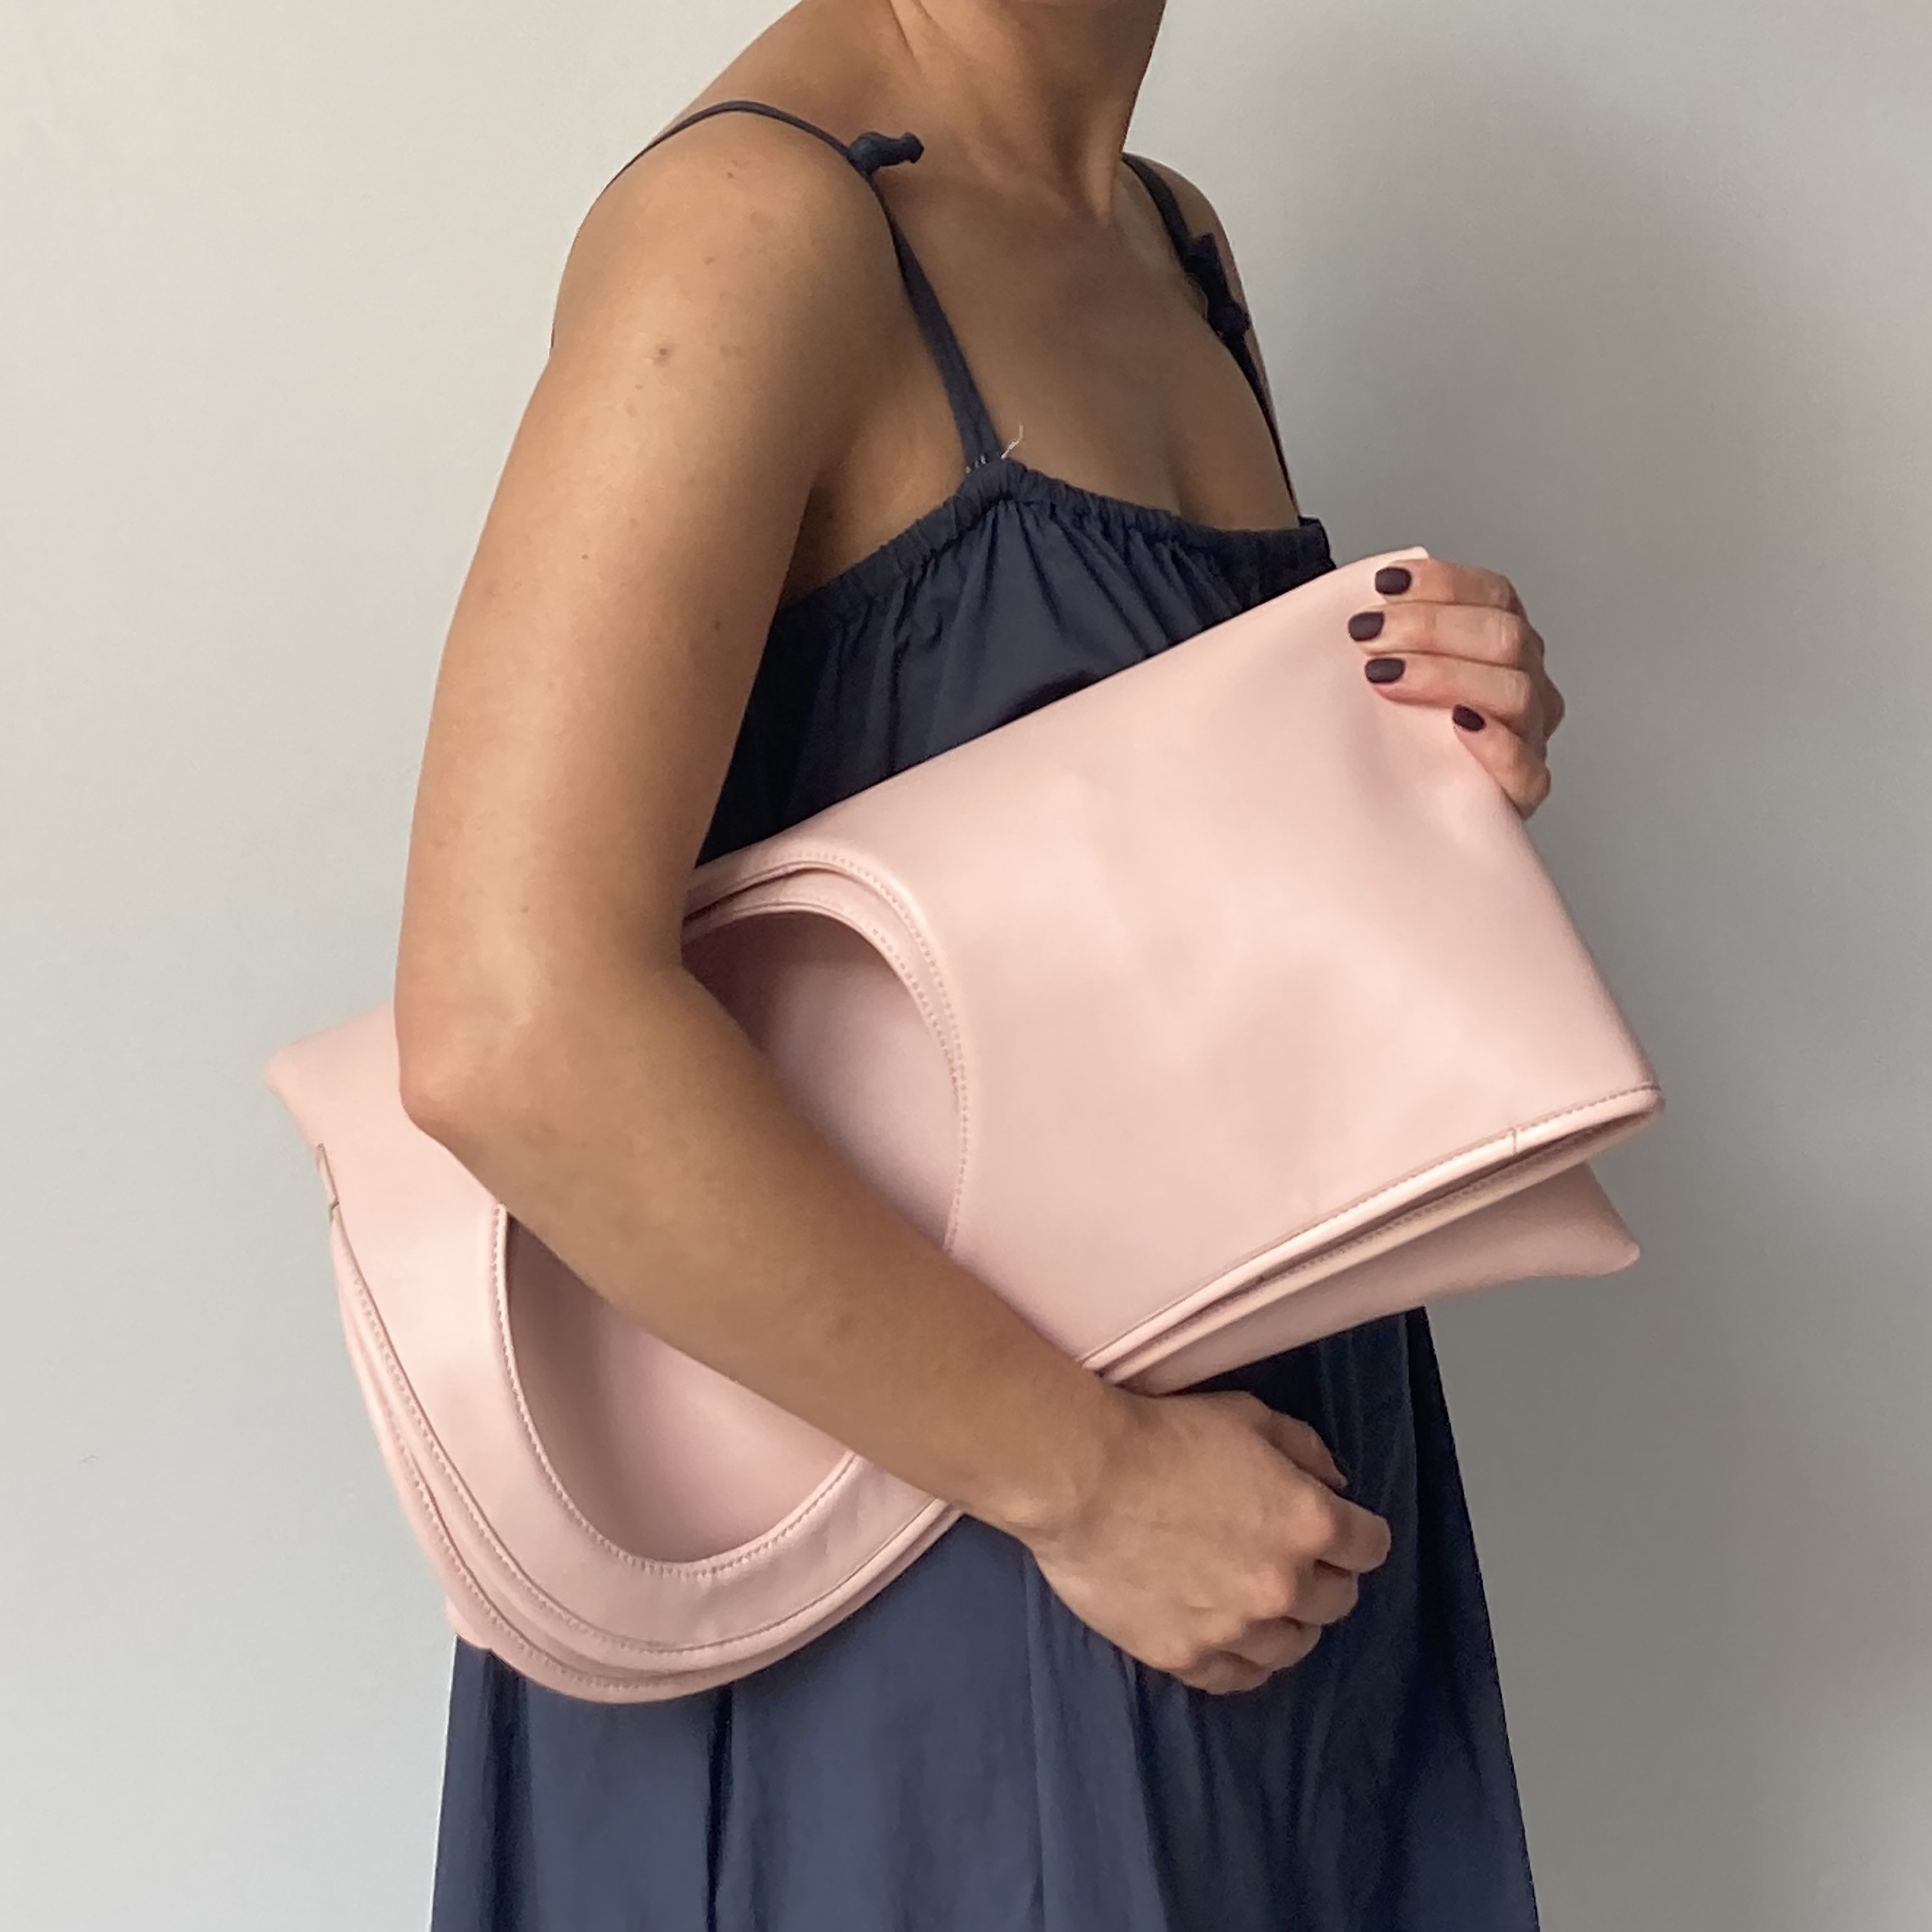 Glossy Bag - Designer Strap - Hot Pink & Light Pink